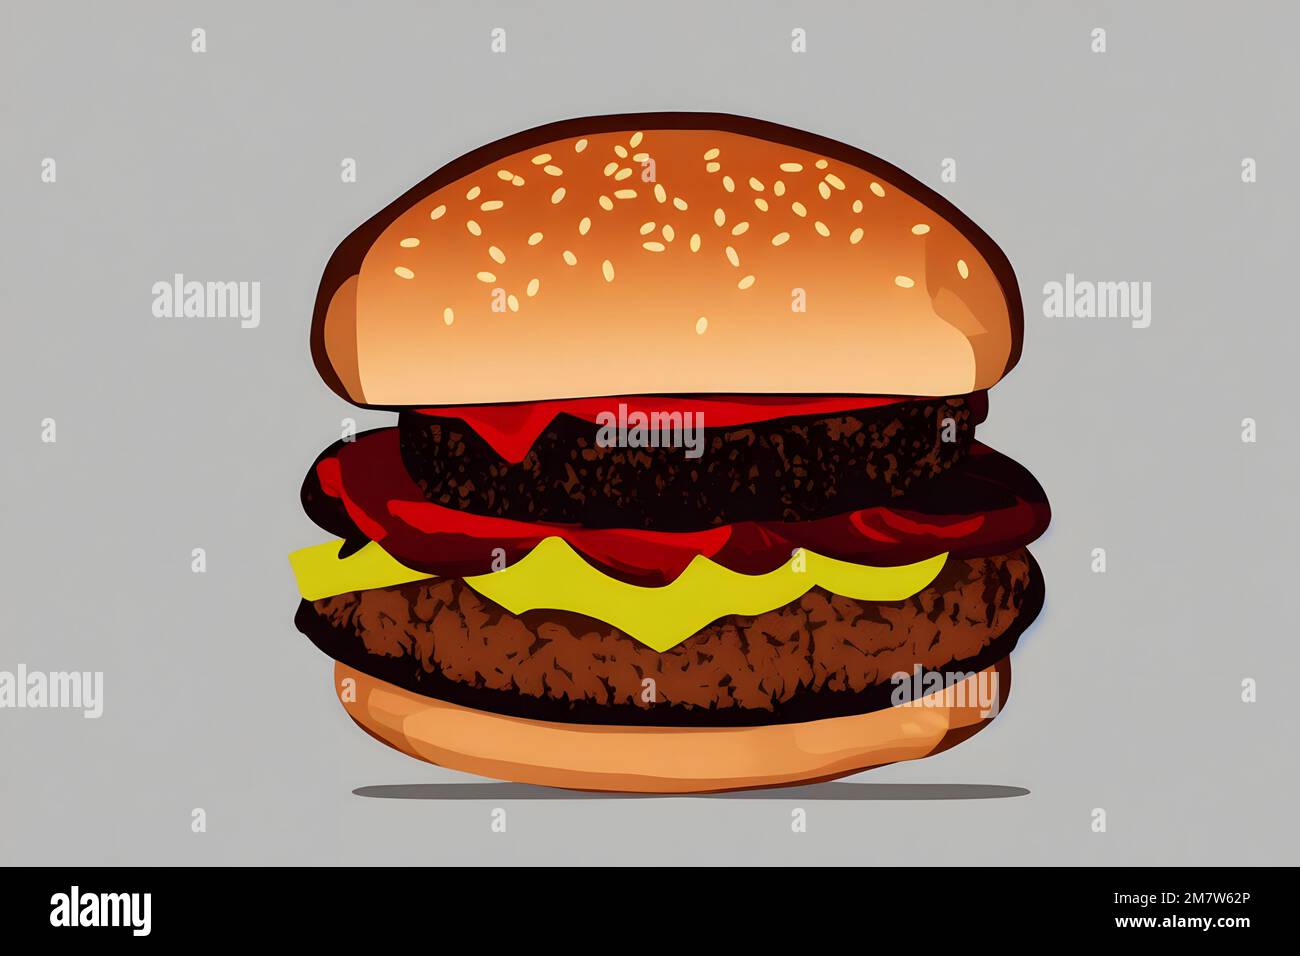 Illustration d'un hamburger de style rétro, un classique de restauration rapide Banque D'Images